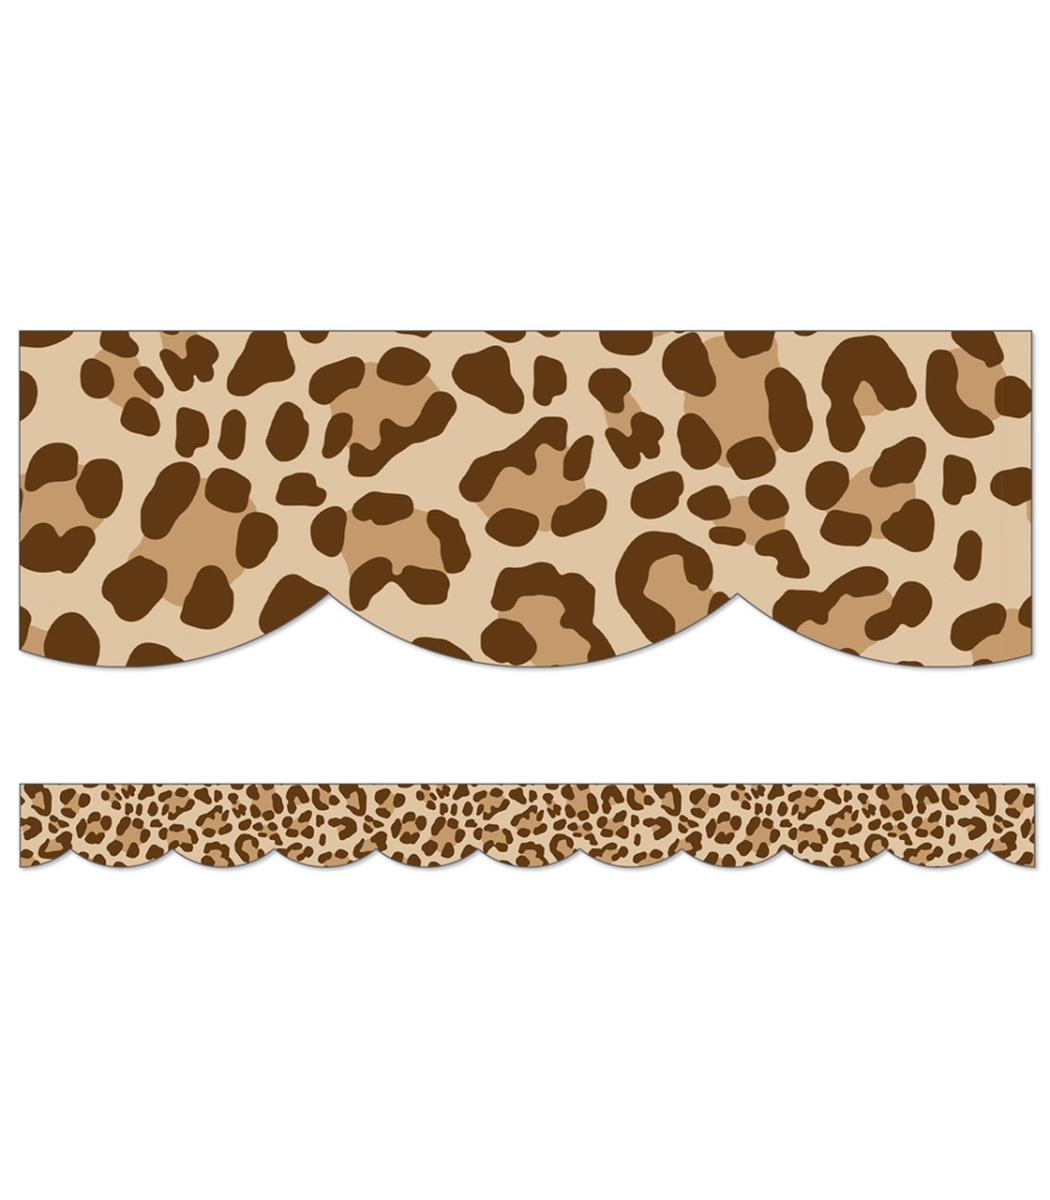 Picture of Carson Dellosa Education CD-108461-3 Safari Leopard Scalloped Borders - Pack of 3